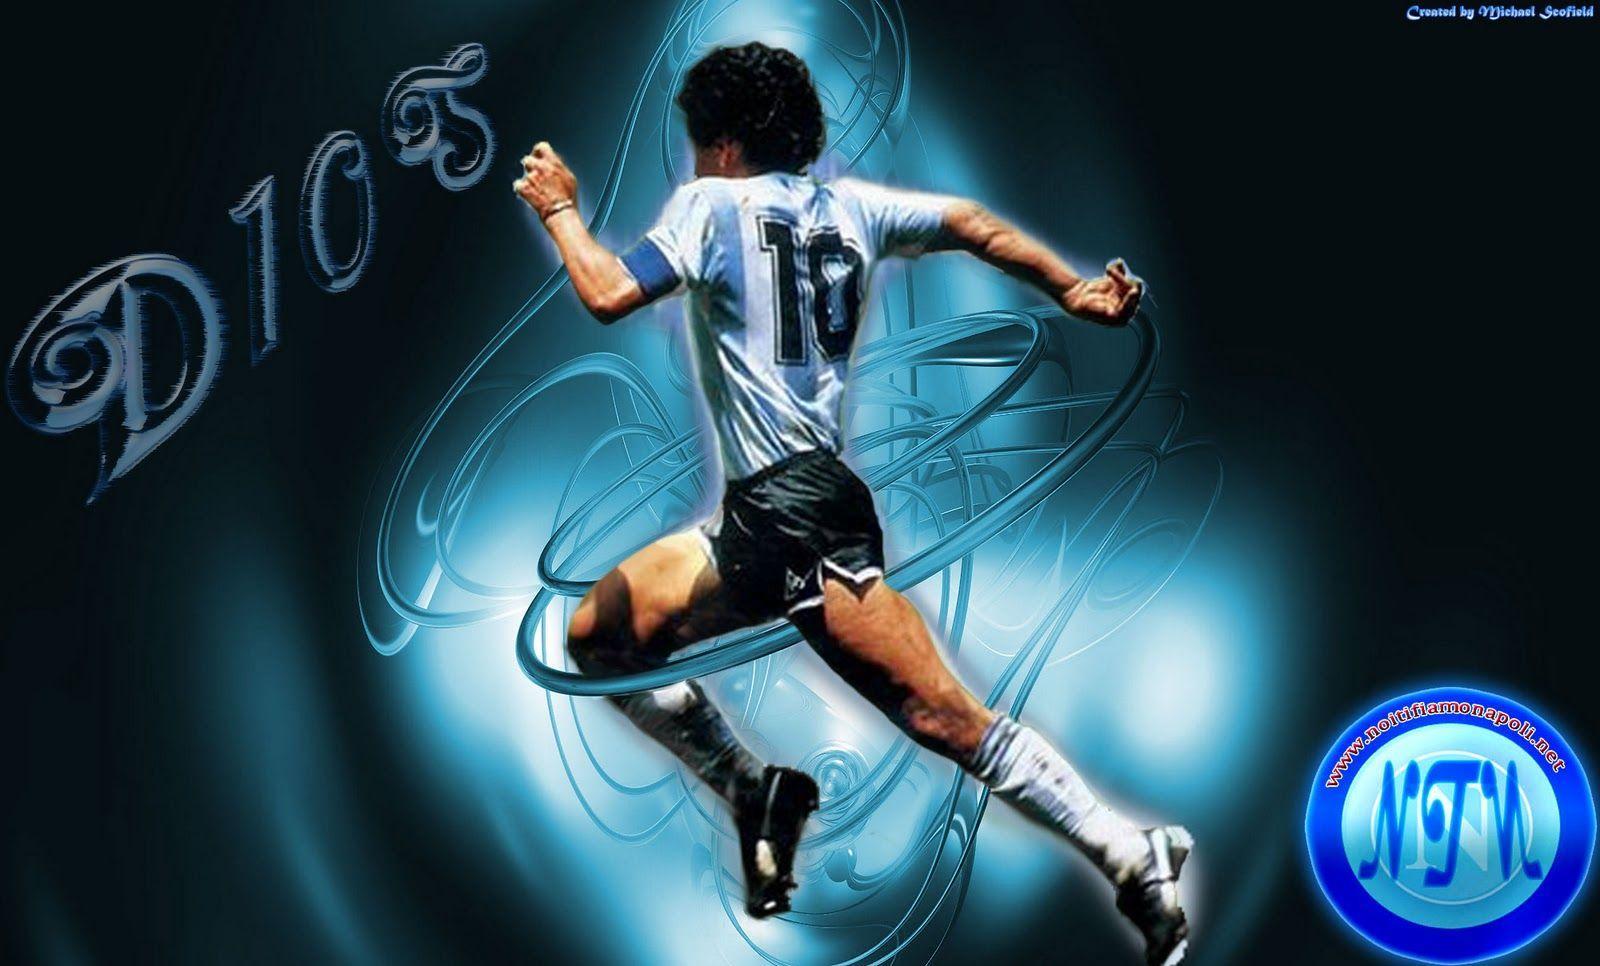 Wallpaper Diego Maradona HD 1280x1024 #diego maradona